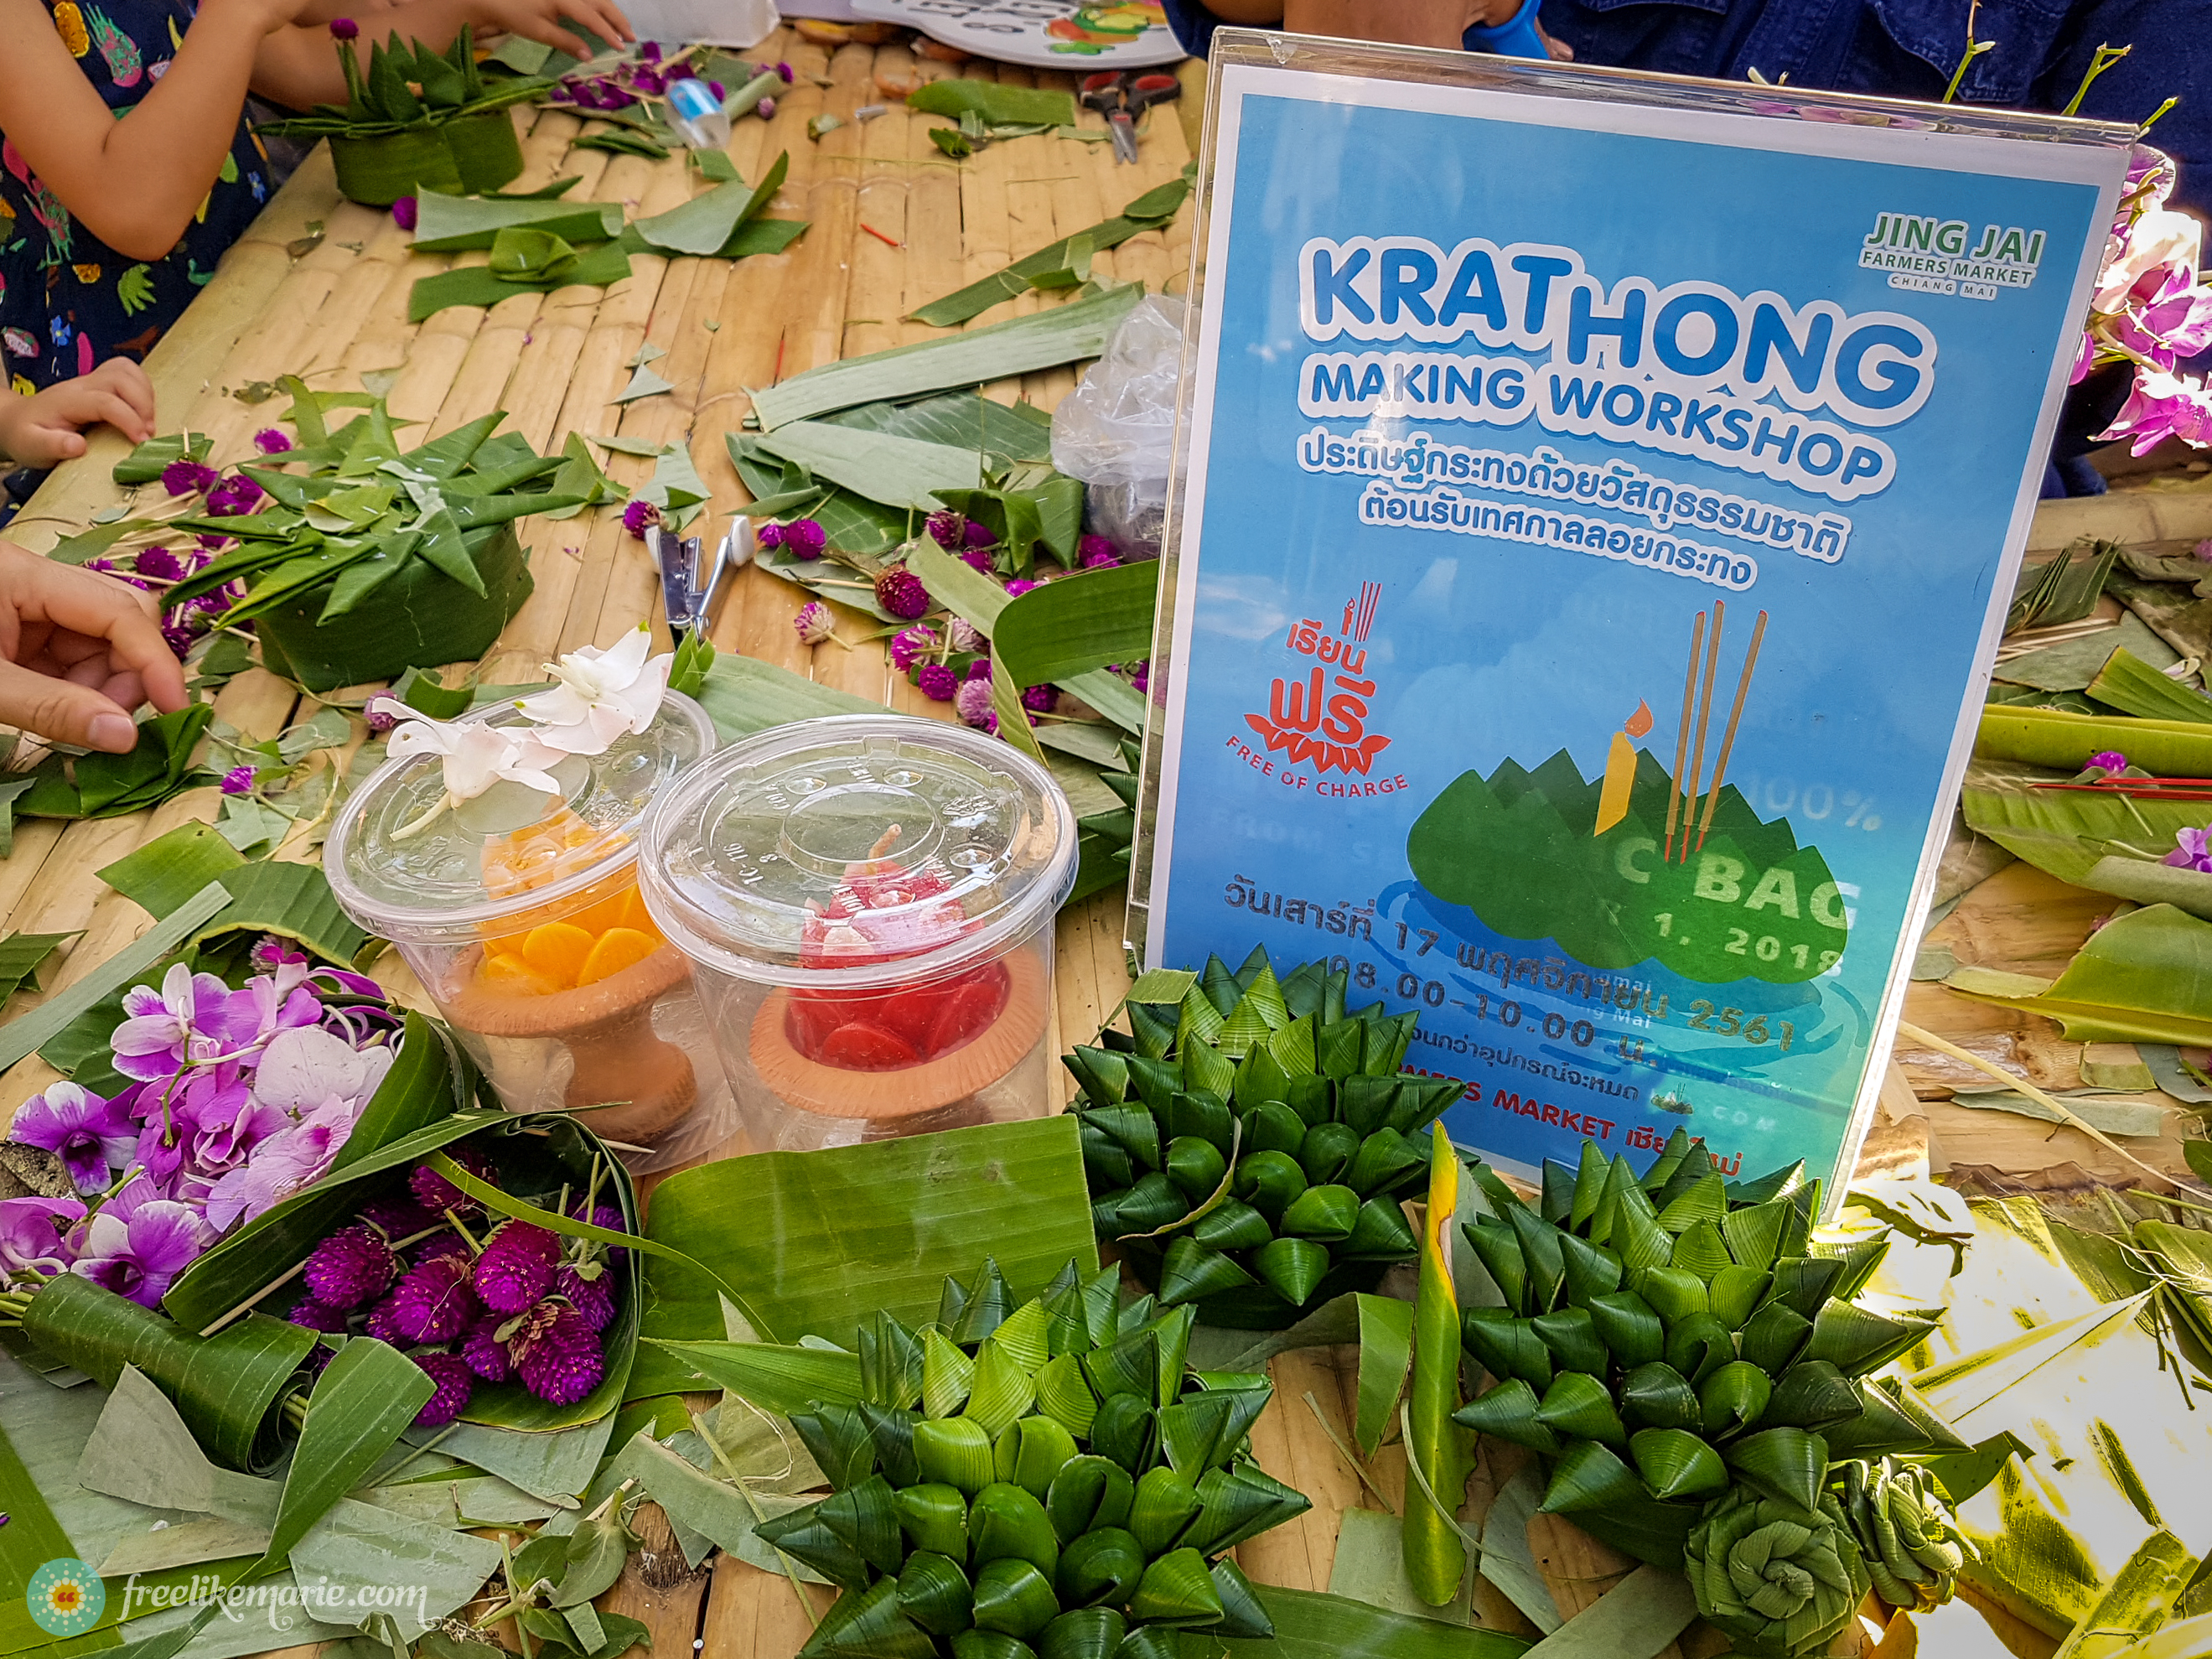 Free Krathong Workshop